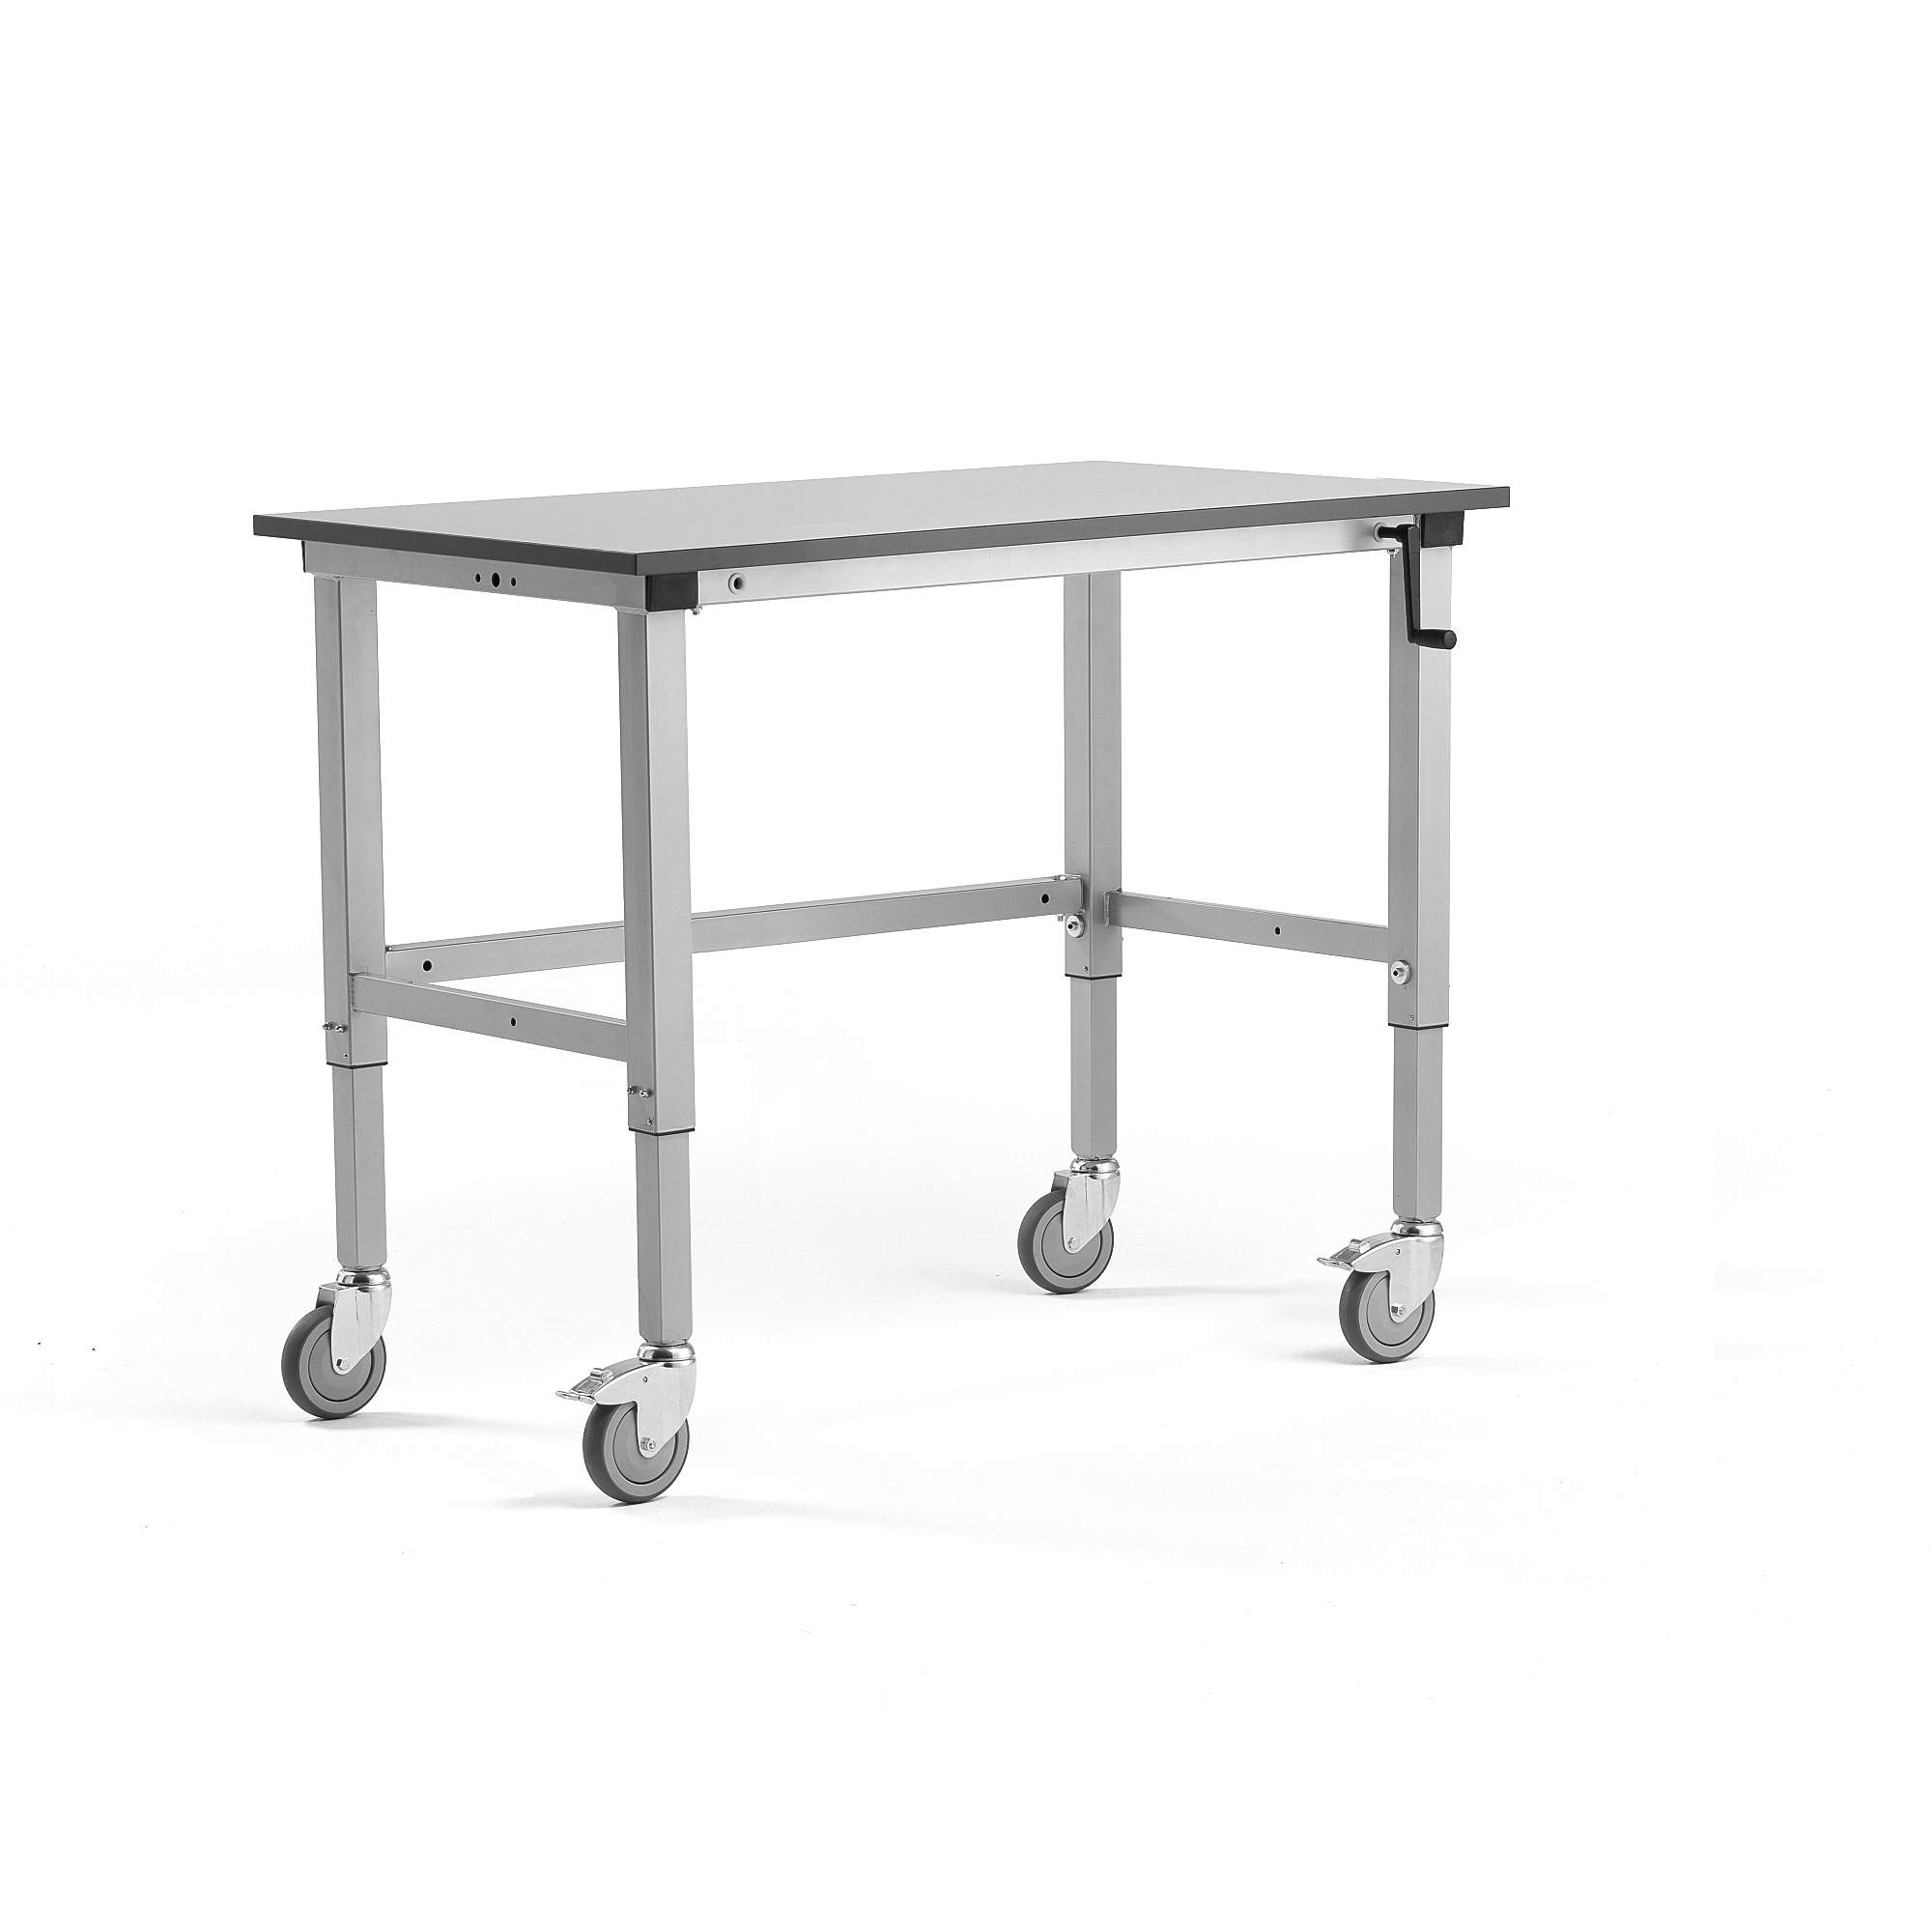 Mobilní pracovní stůl MOTION, manuálně nastavitelná výška, 1200x600 mm, 150 kg, šedá